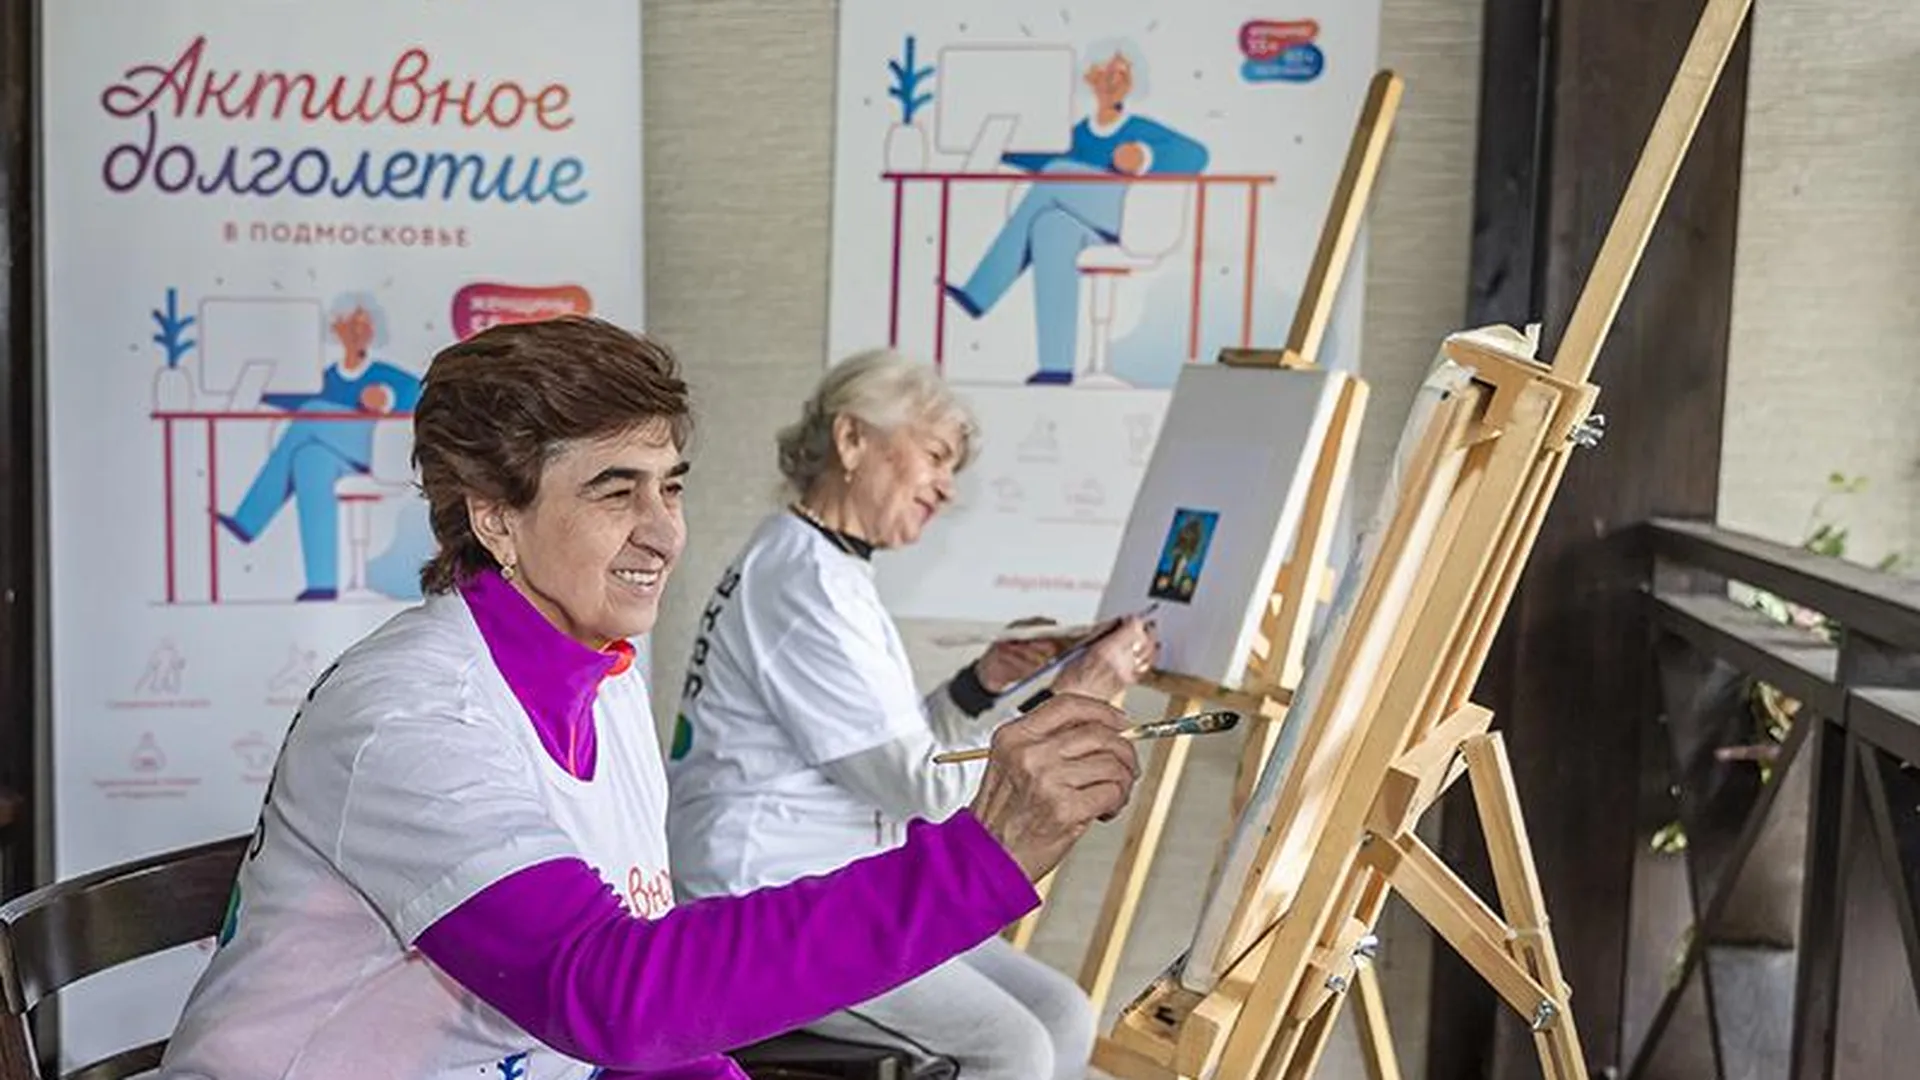 Пенсия – время исполнять мечты: как проект «Активное долголетие» меняет жизни людей старшего возраста